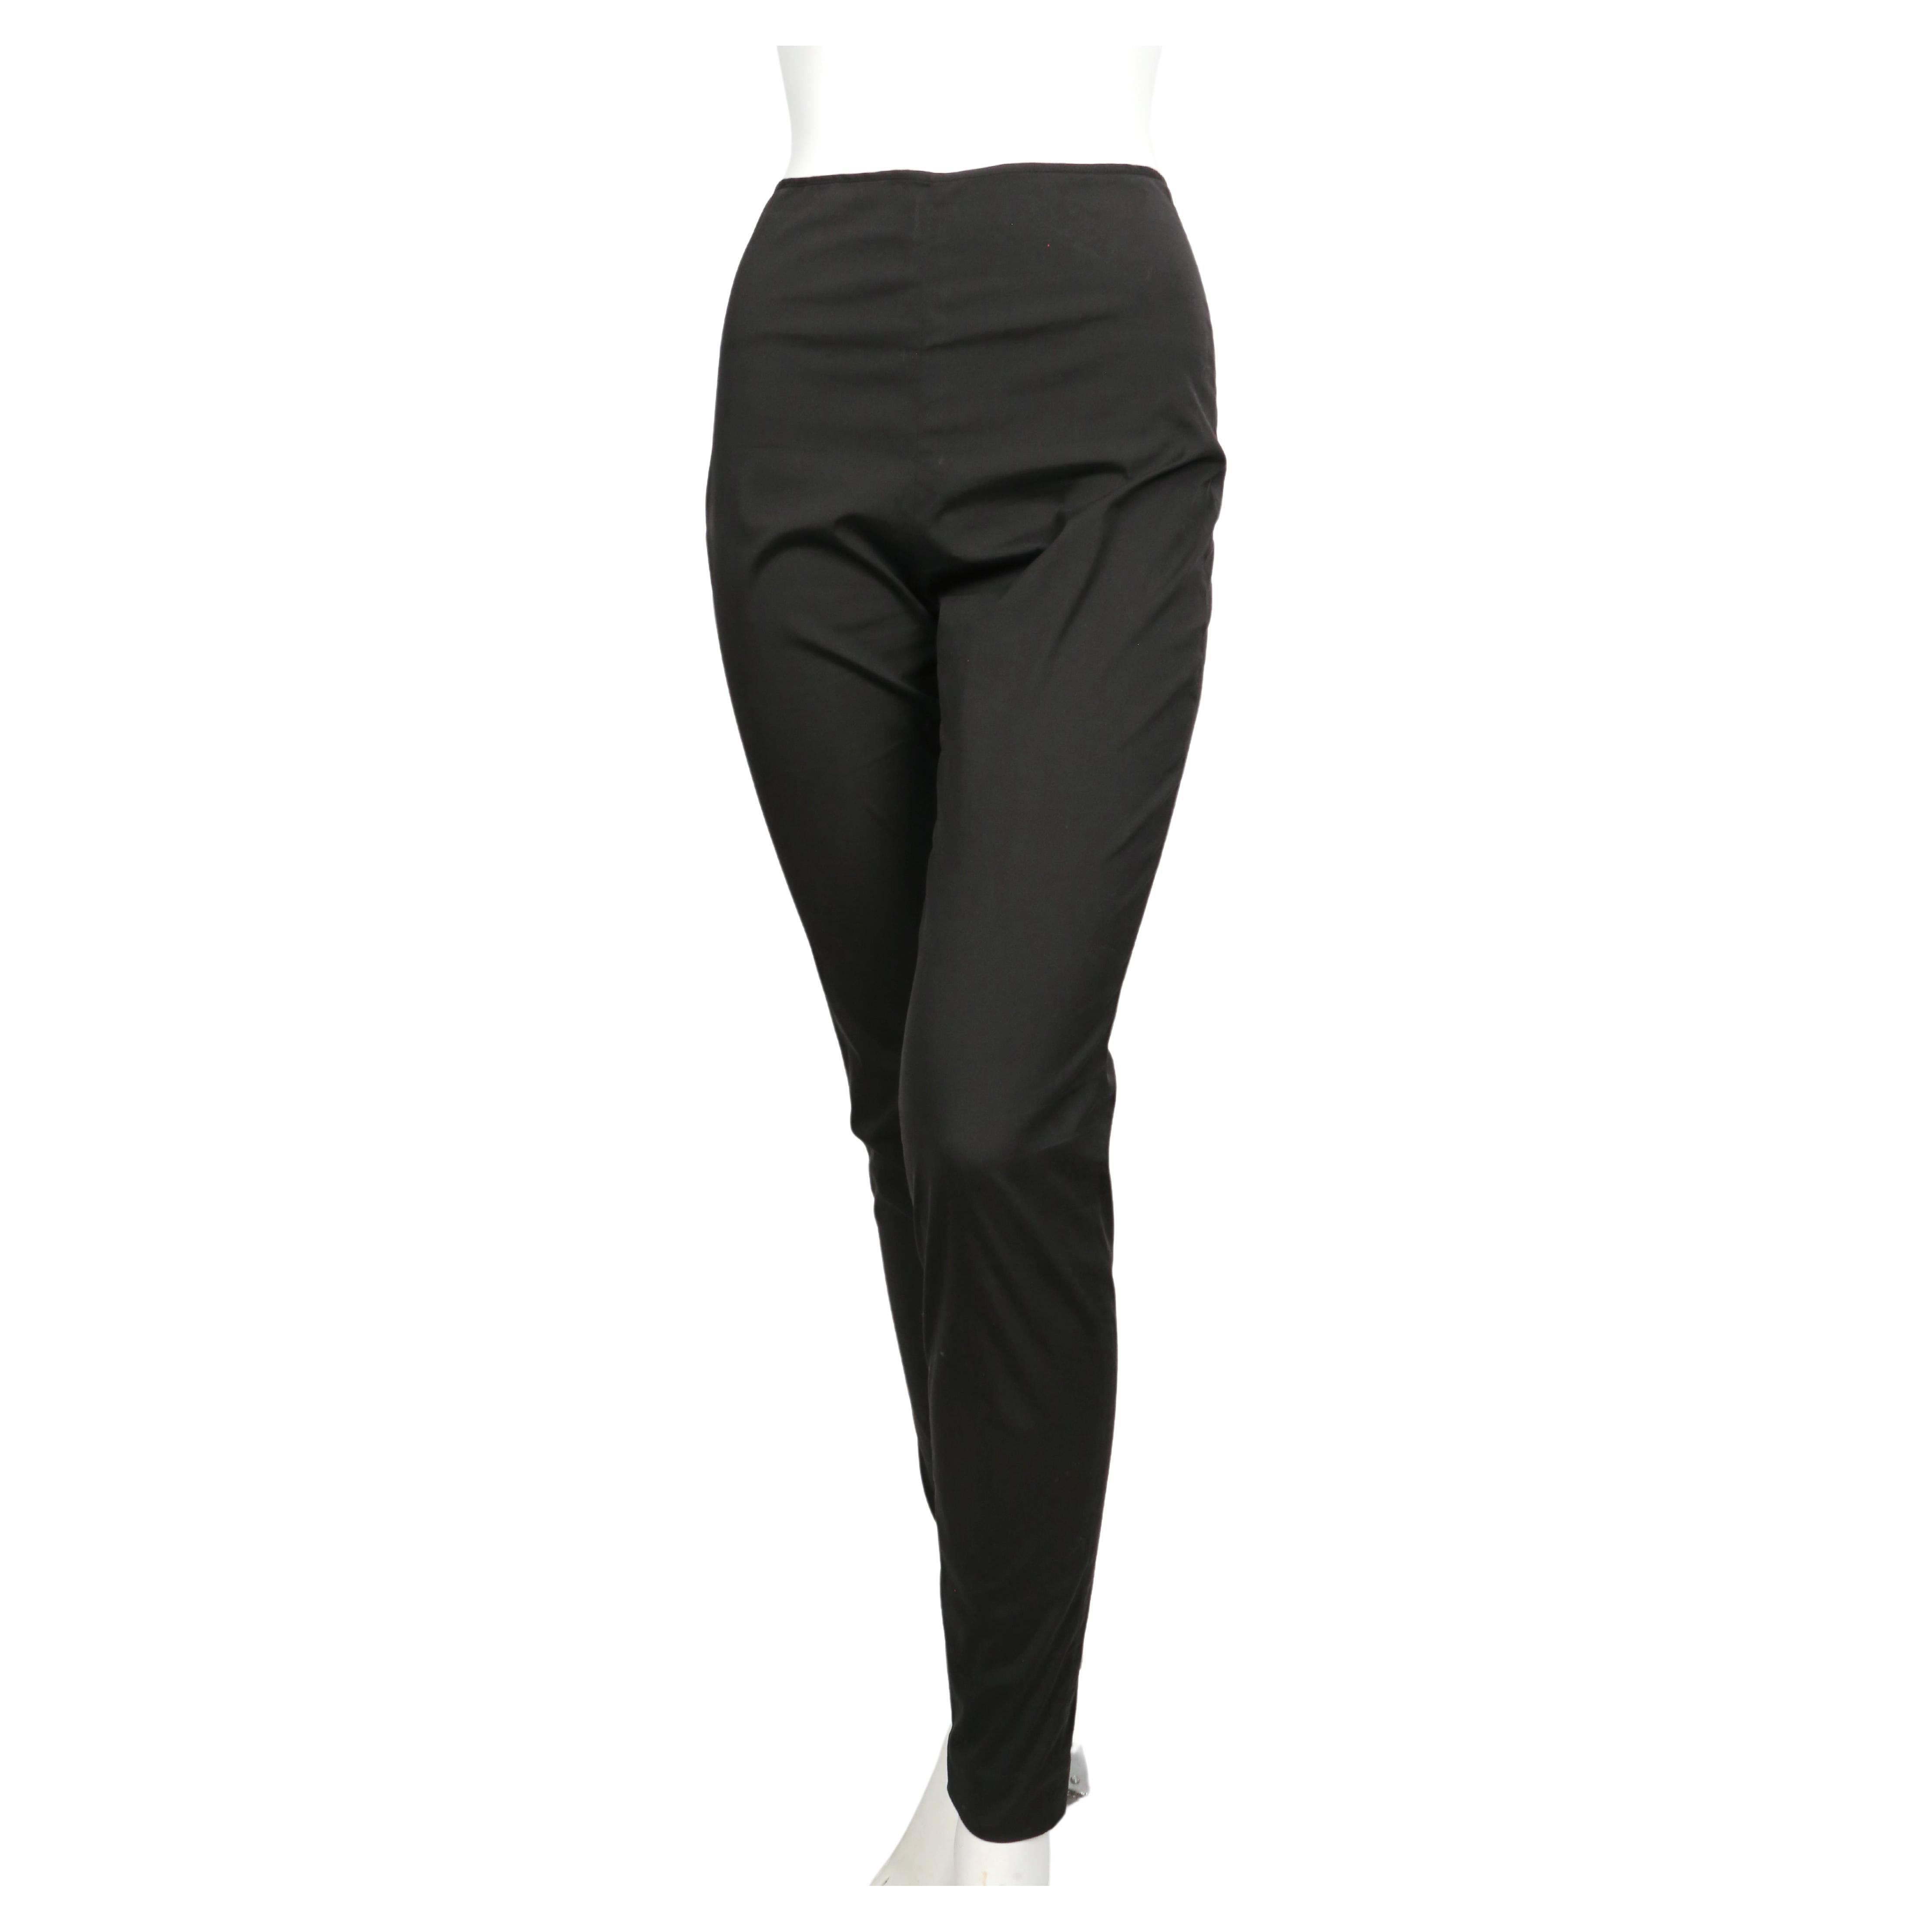 Pantalon noir ajusté à taille haute avec fermetures éclair à la cheville, conçu par Jean Paul Gaultier et datant de la fin des années 1990. Taille française 38. Les pantalons n'étaient pas attachés sur le mannequin français de taille 36. Mesures